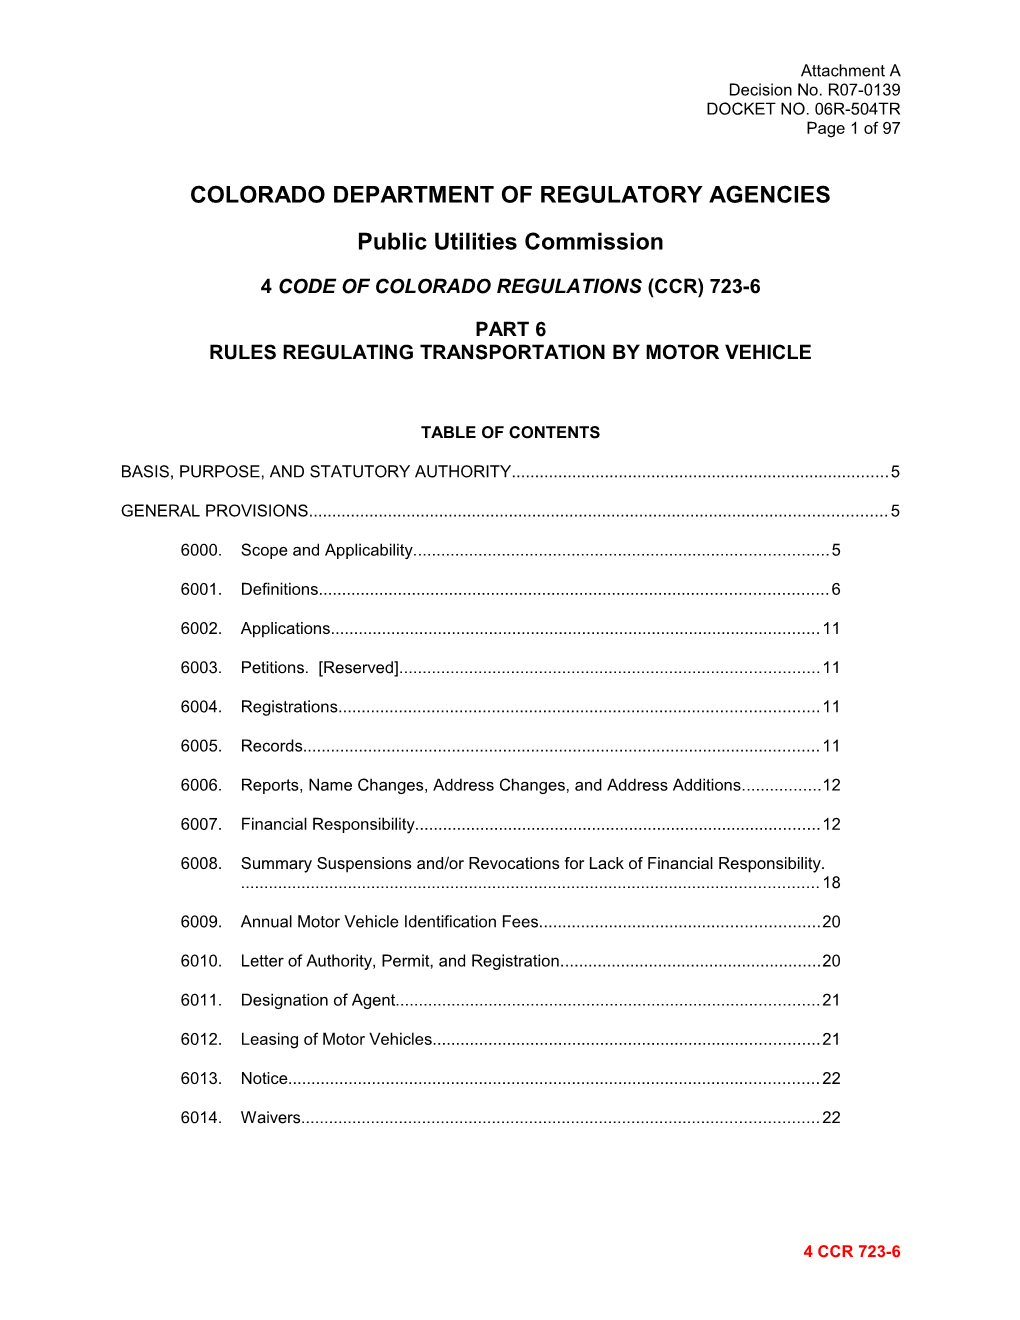 Colorado Department of Regulatory Agencies s10